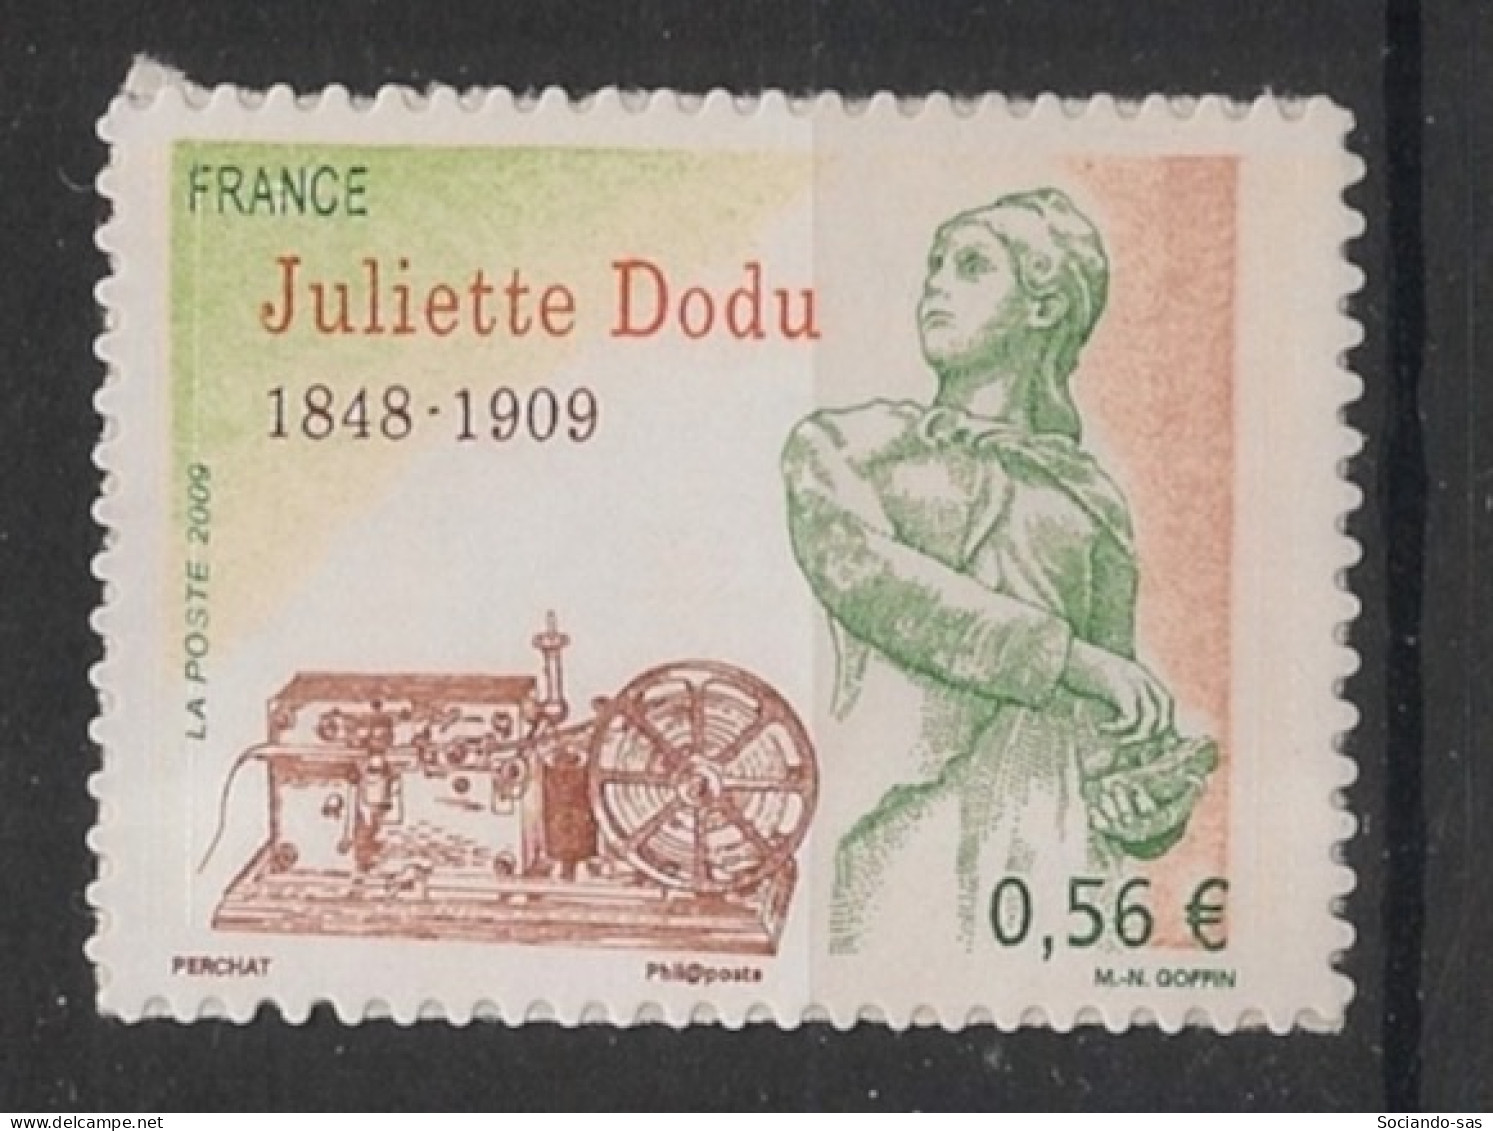 FRANCE - 2009 - Adhésif N°YT. 371 - Juliette Dodu - Neuf Luxe ** / MNH / Postfrisch - Unused Stamps